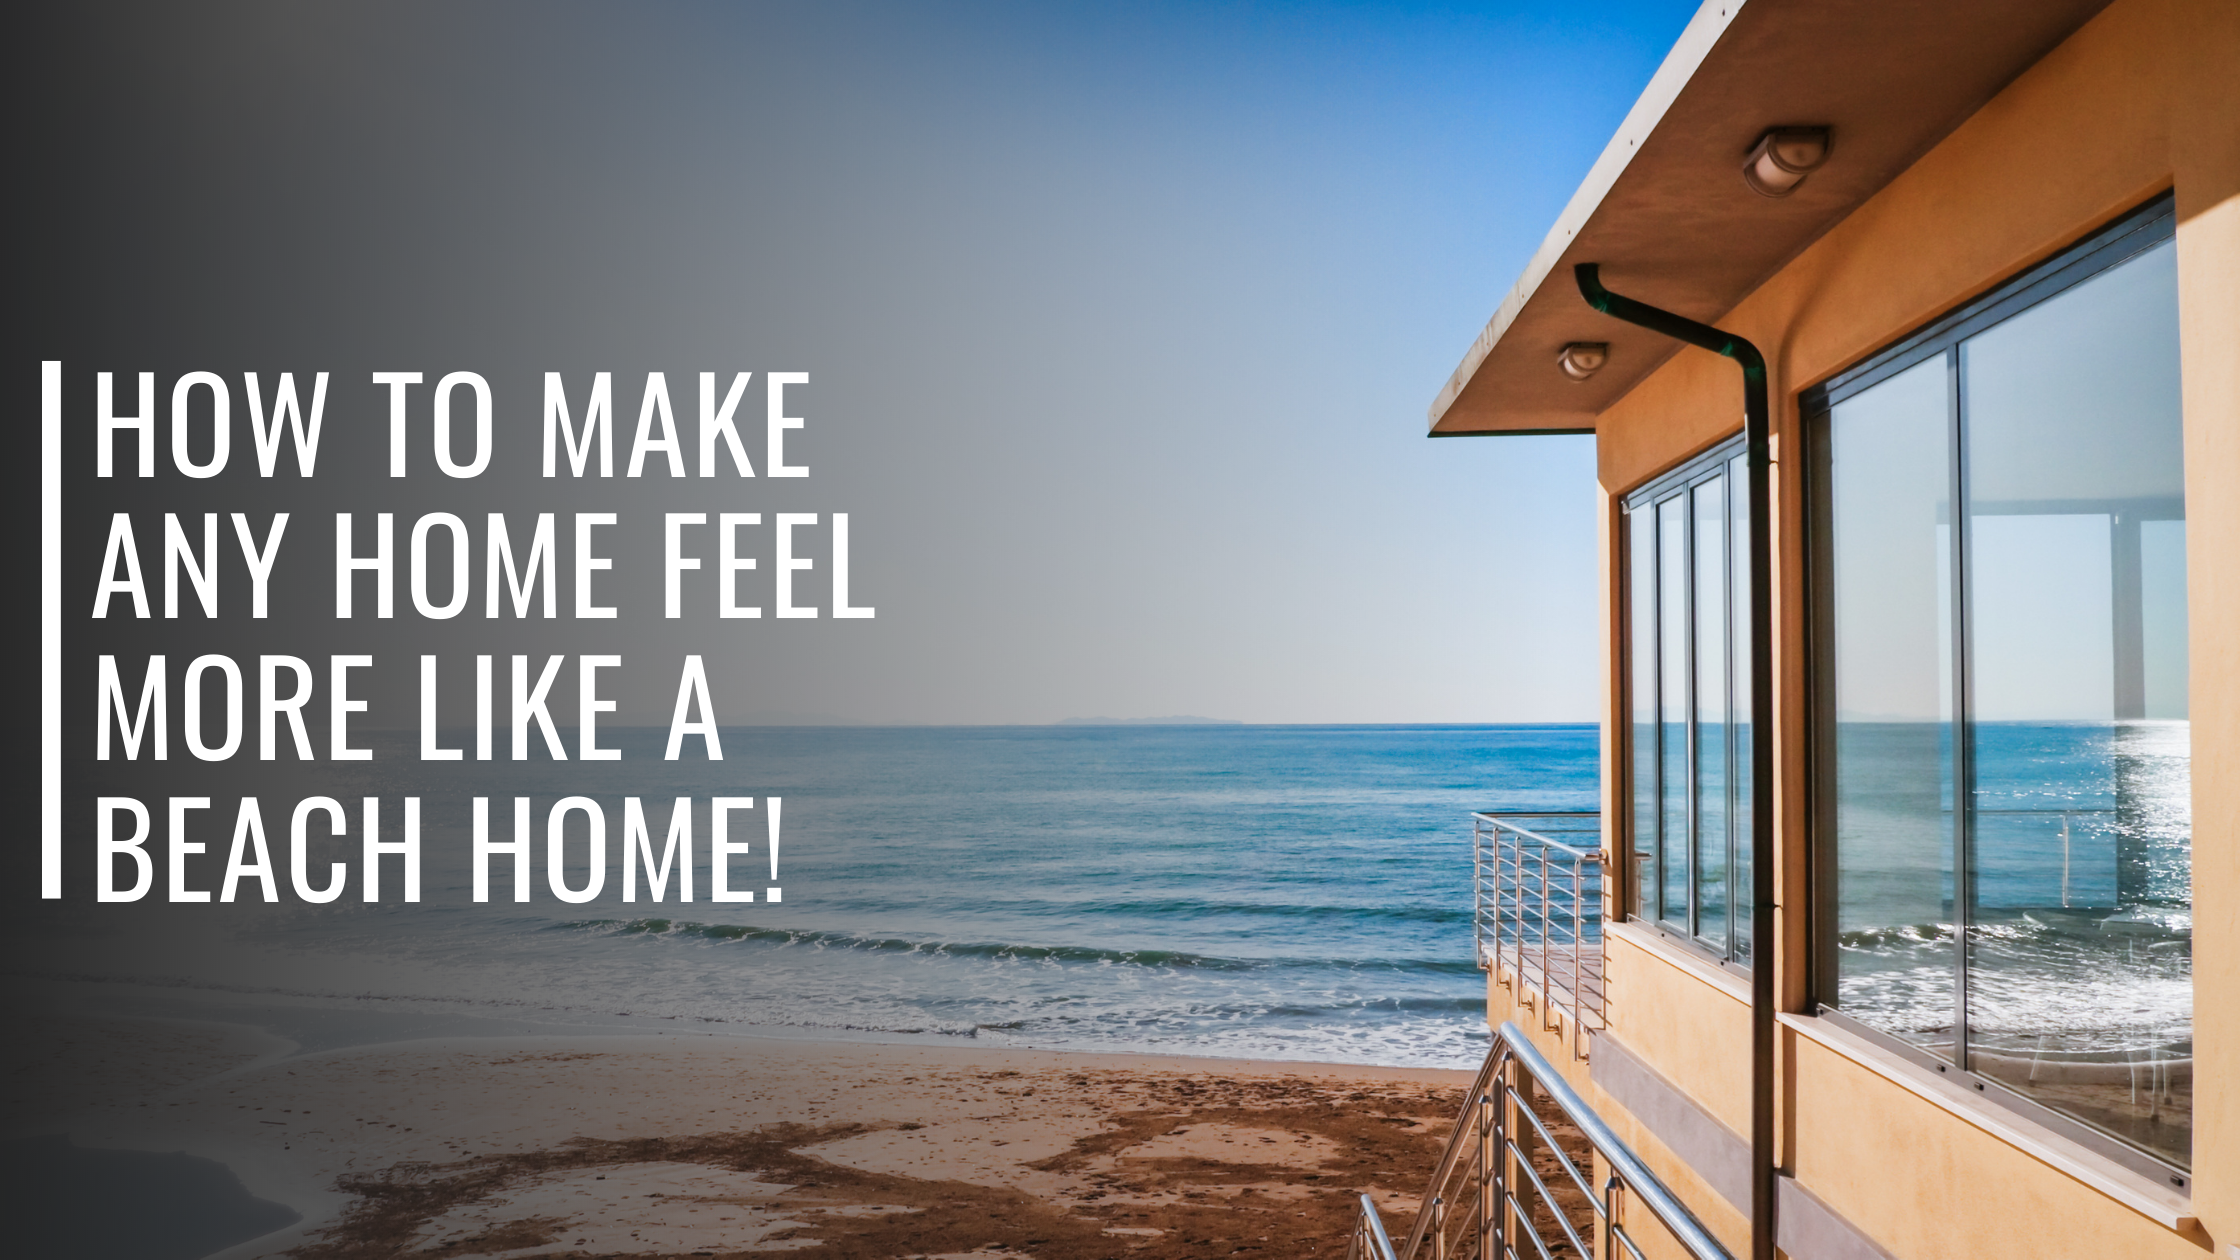 How To Make Any Home Feel More Like a Beach Home!-Bondi Joe Swimwear